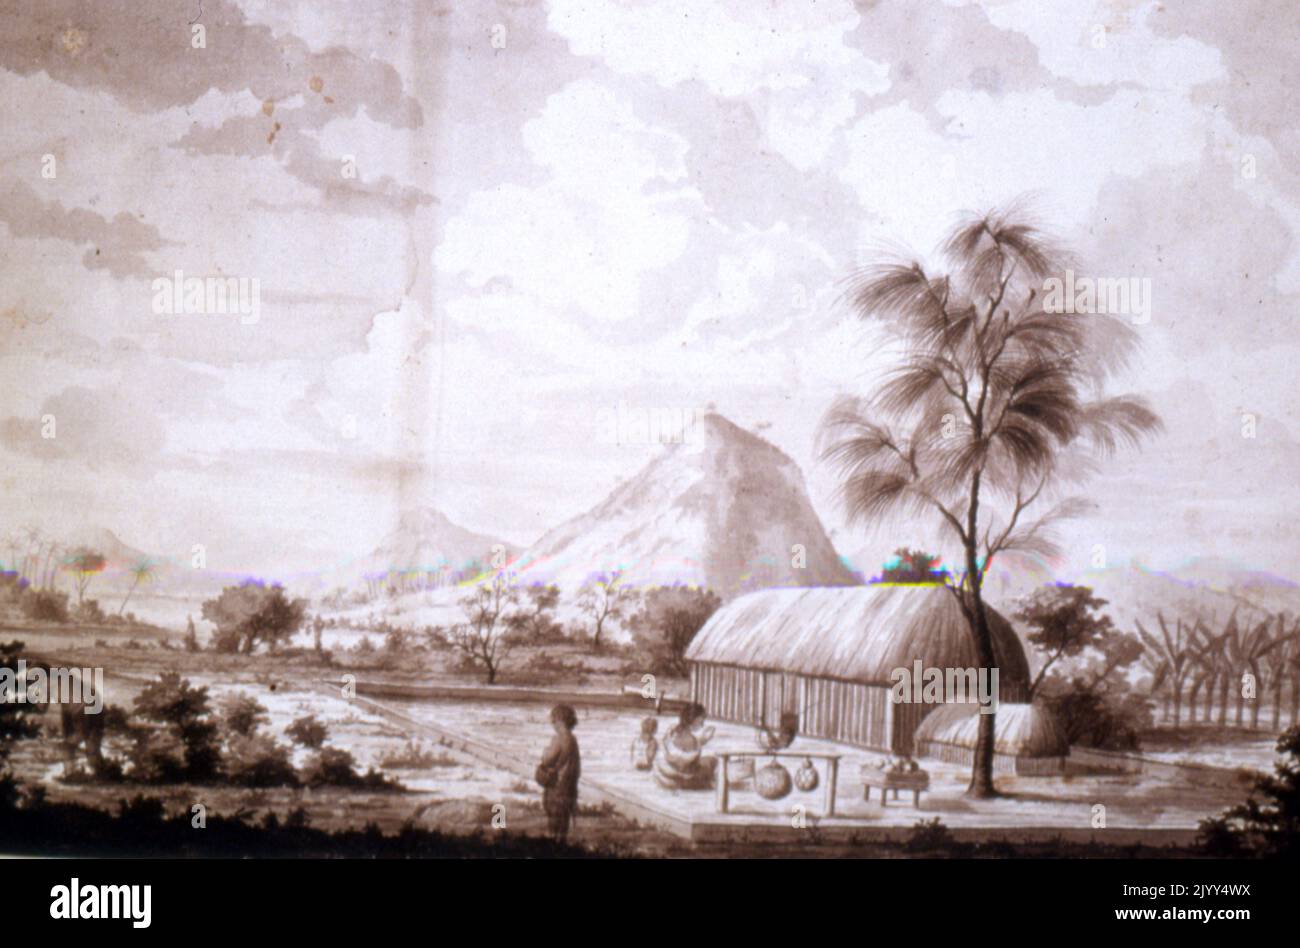 Casa dei Chiefs a Tahiti di Sydney Parkinson (c.. 1745 - 1771), da Sydney Parkinson (c.. 1745 - 1771), illustratore botanico scozzese e artista di storia naturale. È stato il primo artista europeo a visitare Australia, Nuova Zelanda e Tahiti. Parkinson fu impiegato da Joseph Banks per viaggiare con lui nel primo viaggio di James Cook nel Pacifico nel 1768, nella HMS Endeavour. Foto Stock